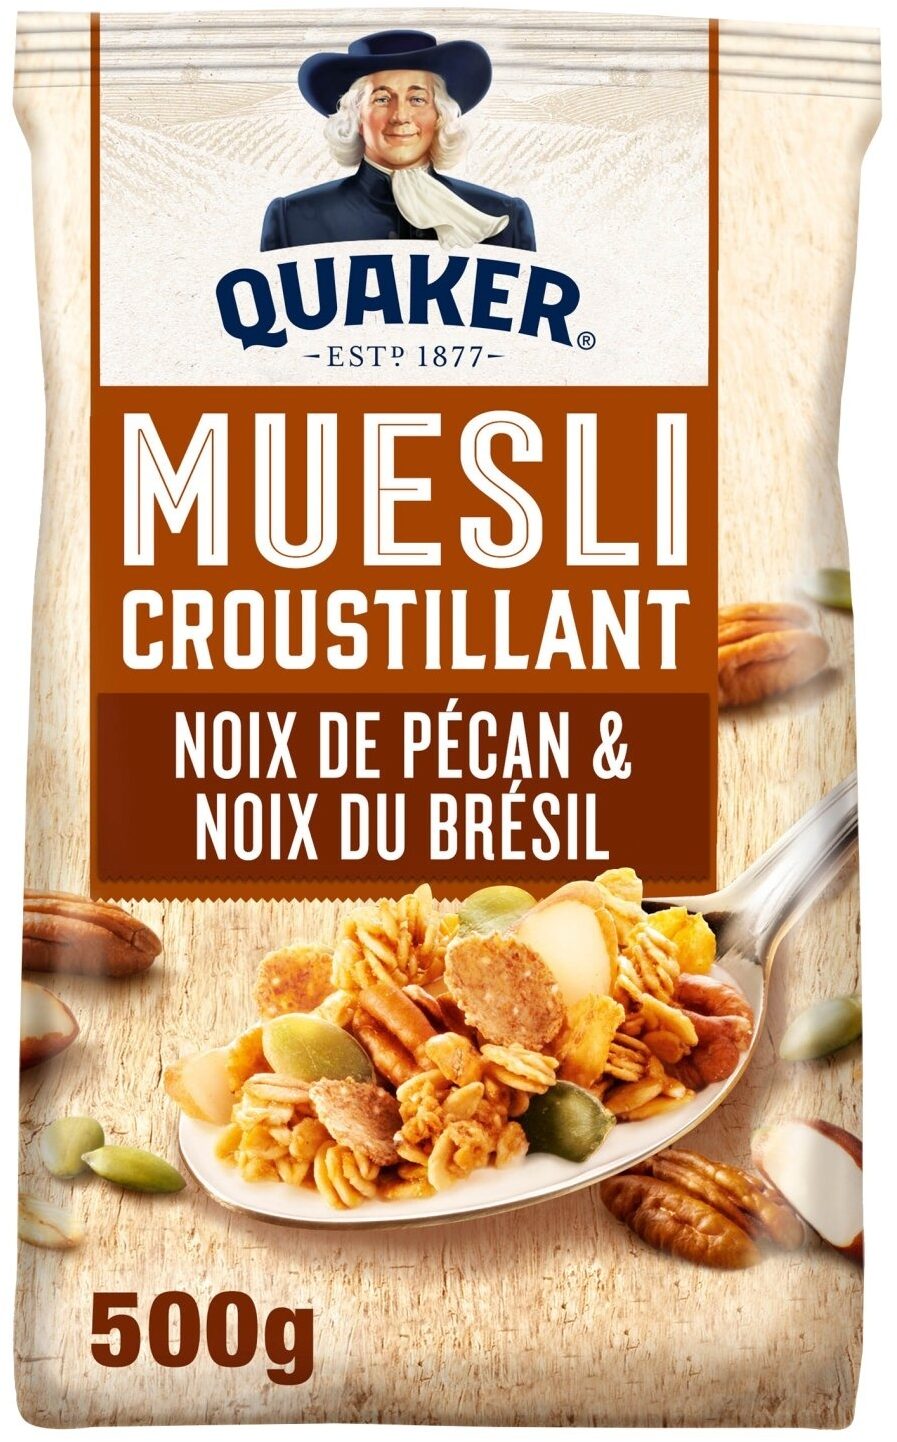 Quaker Muesli Croustillant Noix de pécan & noix du Brésil - Produit - fr